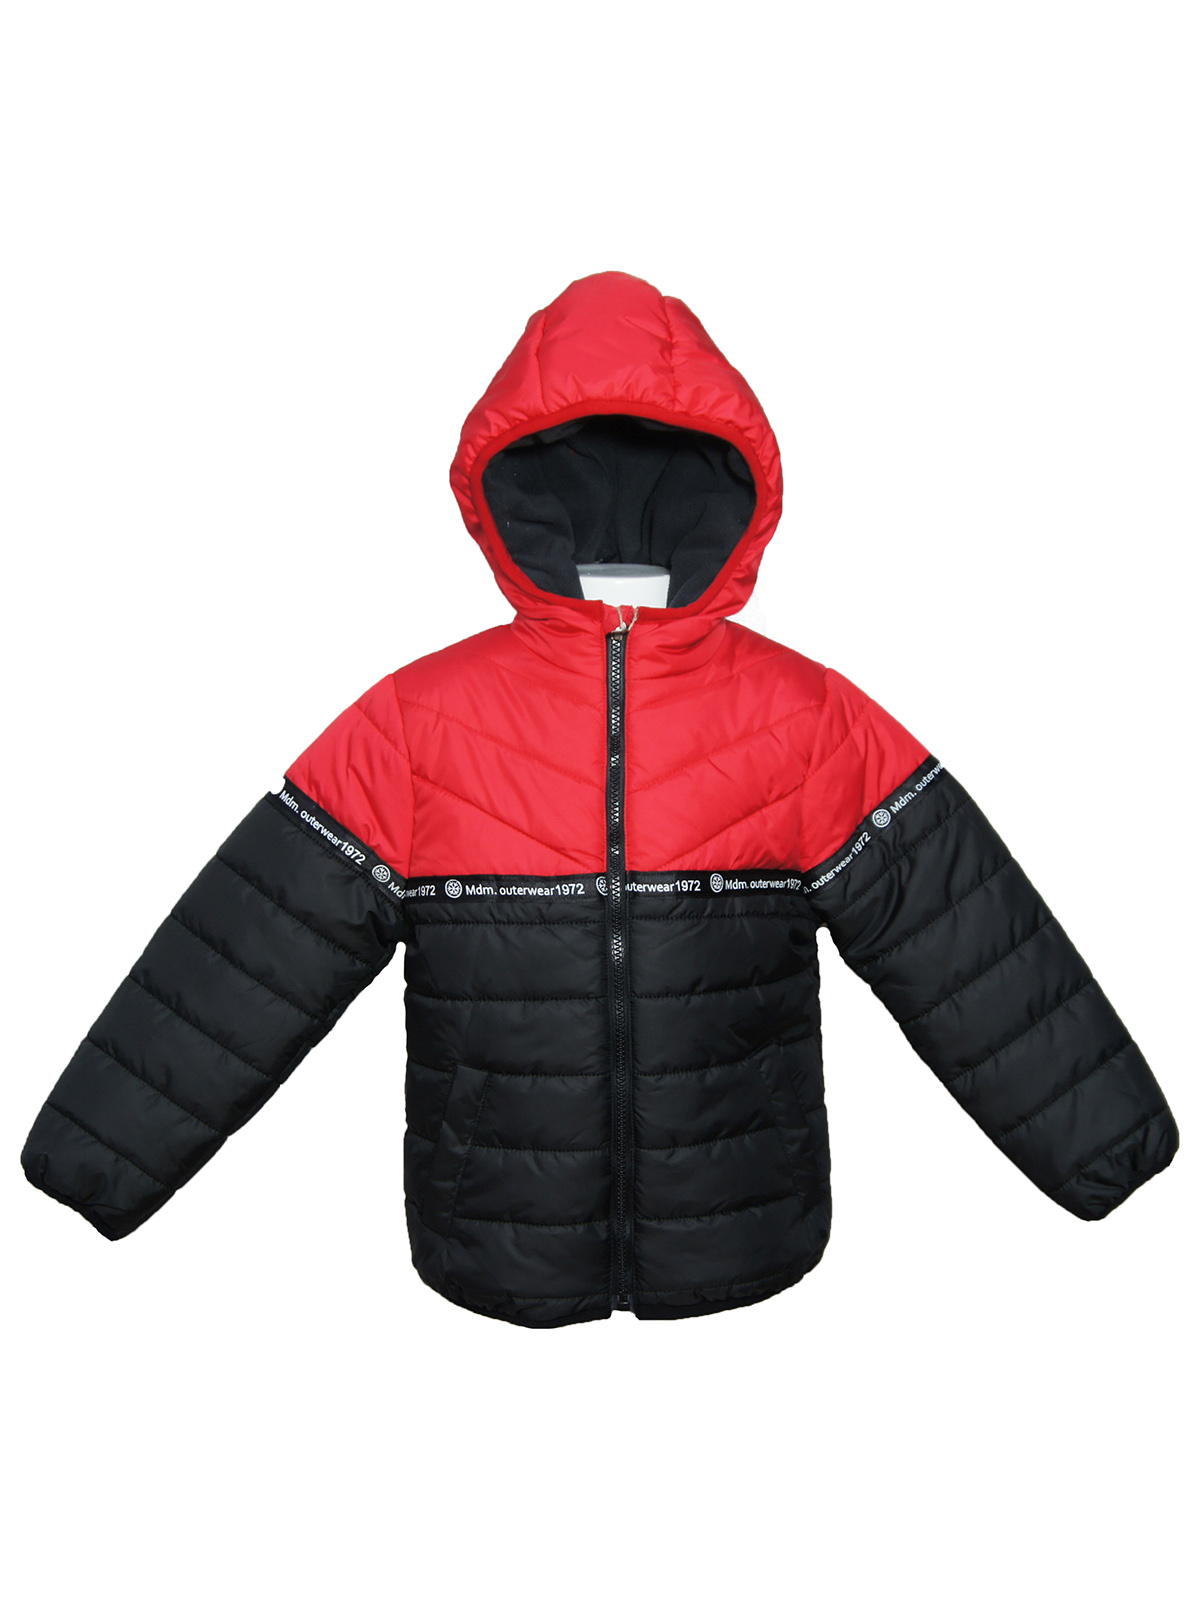 Куртка детская MDM MIDIMOD GOLD 20860, красный, 116 оранжевая стеганая куртка с капюшоном naumi детская